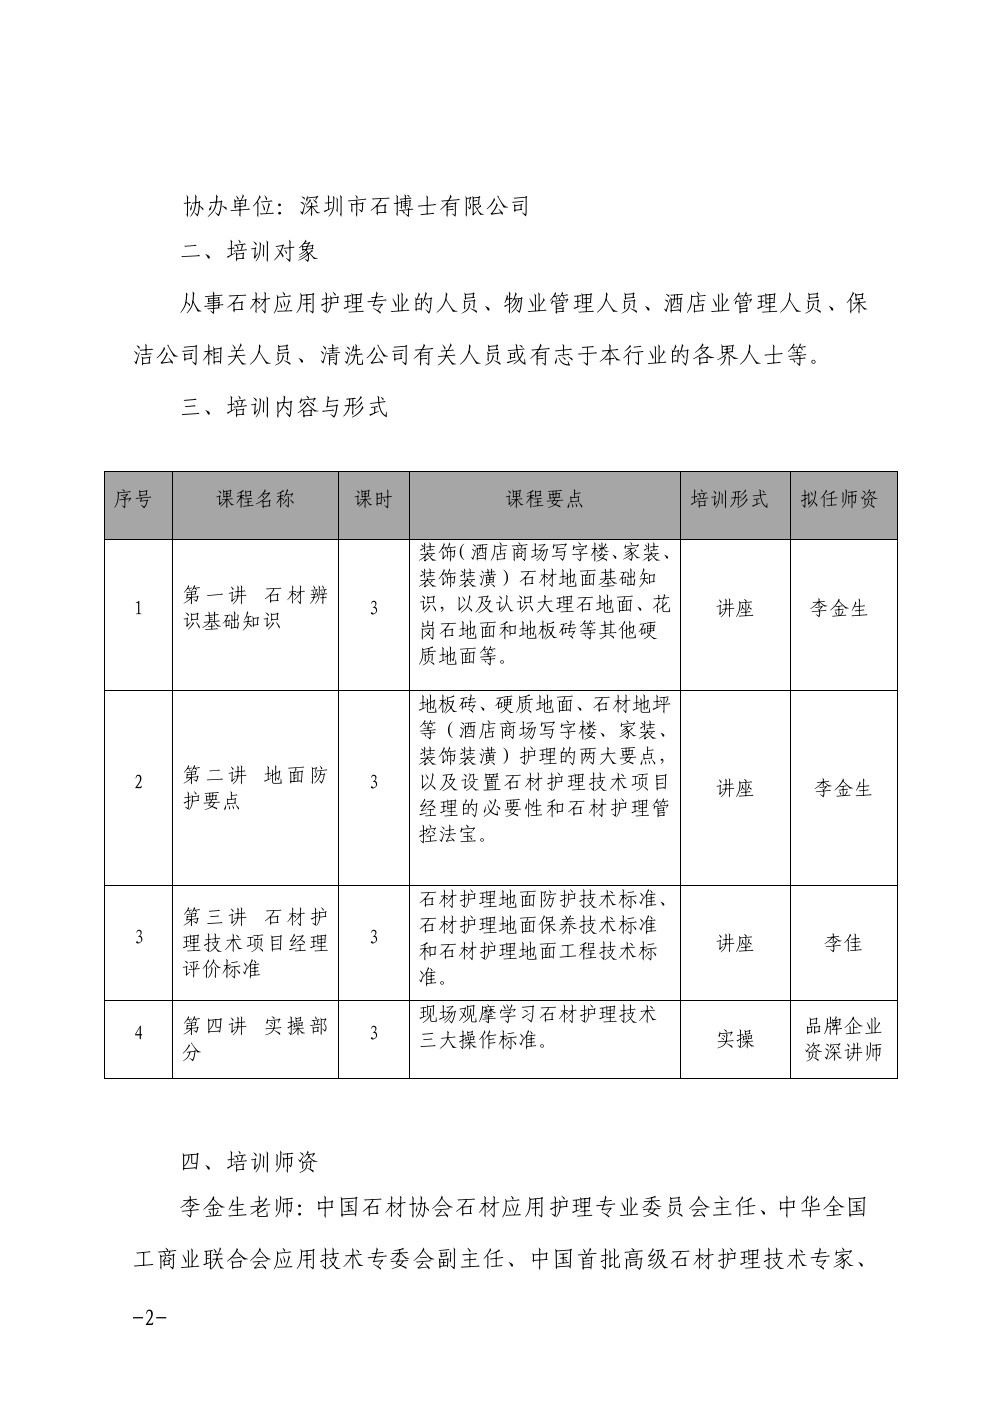 关于在深圳举办石材护理技术项目经理培训班的通知2-乐虎体育直播